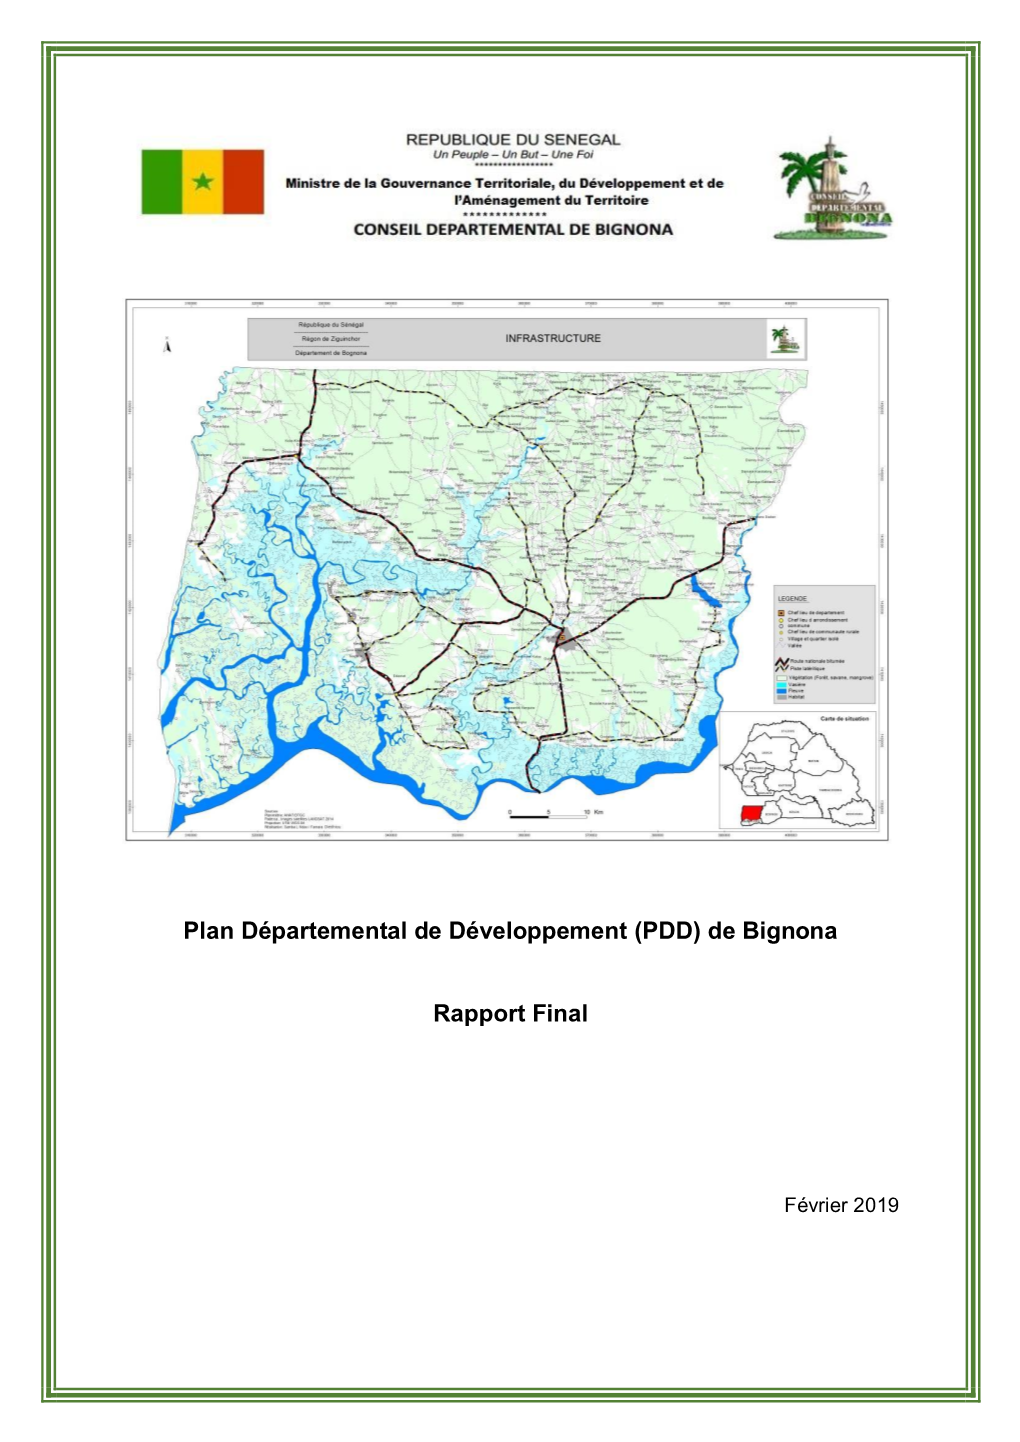 Plan Départemental De Développement (PDD) De Bignona